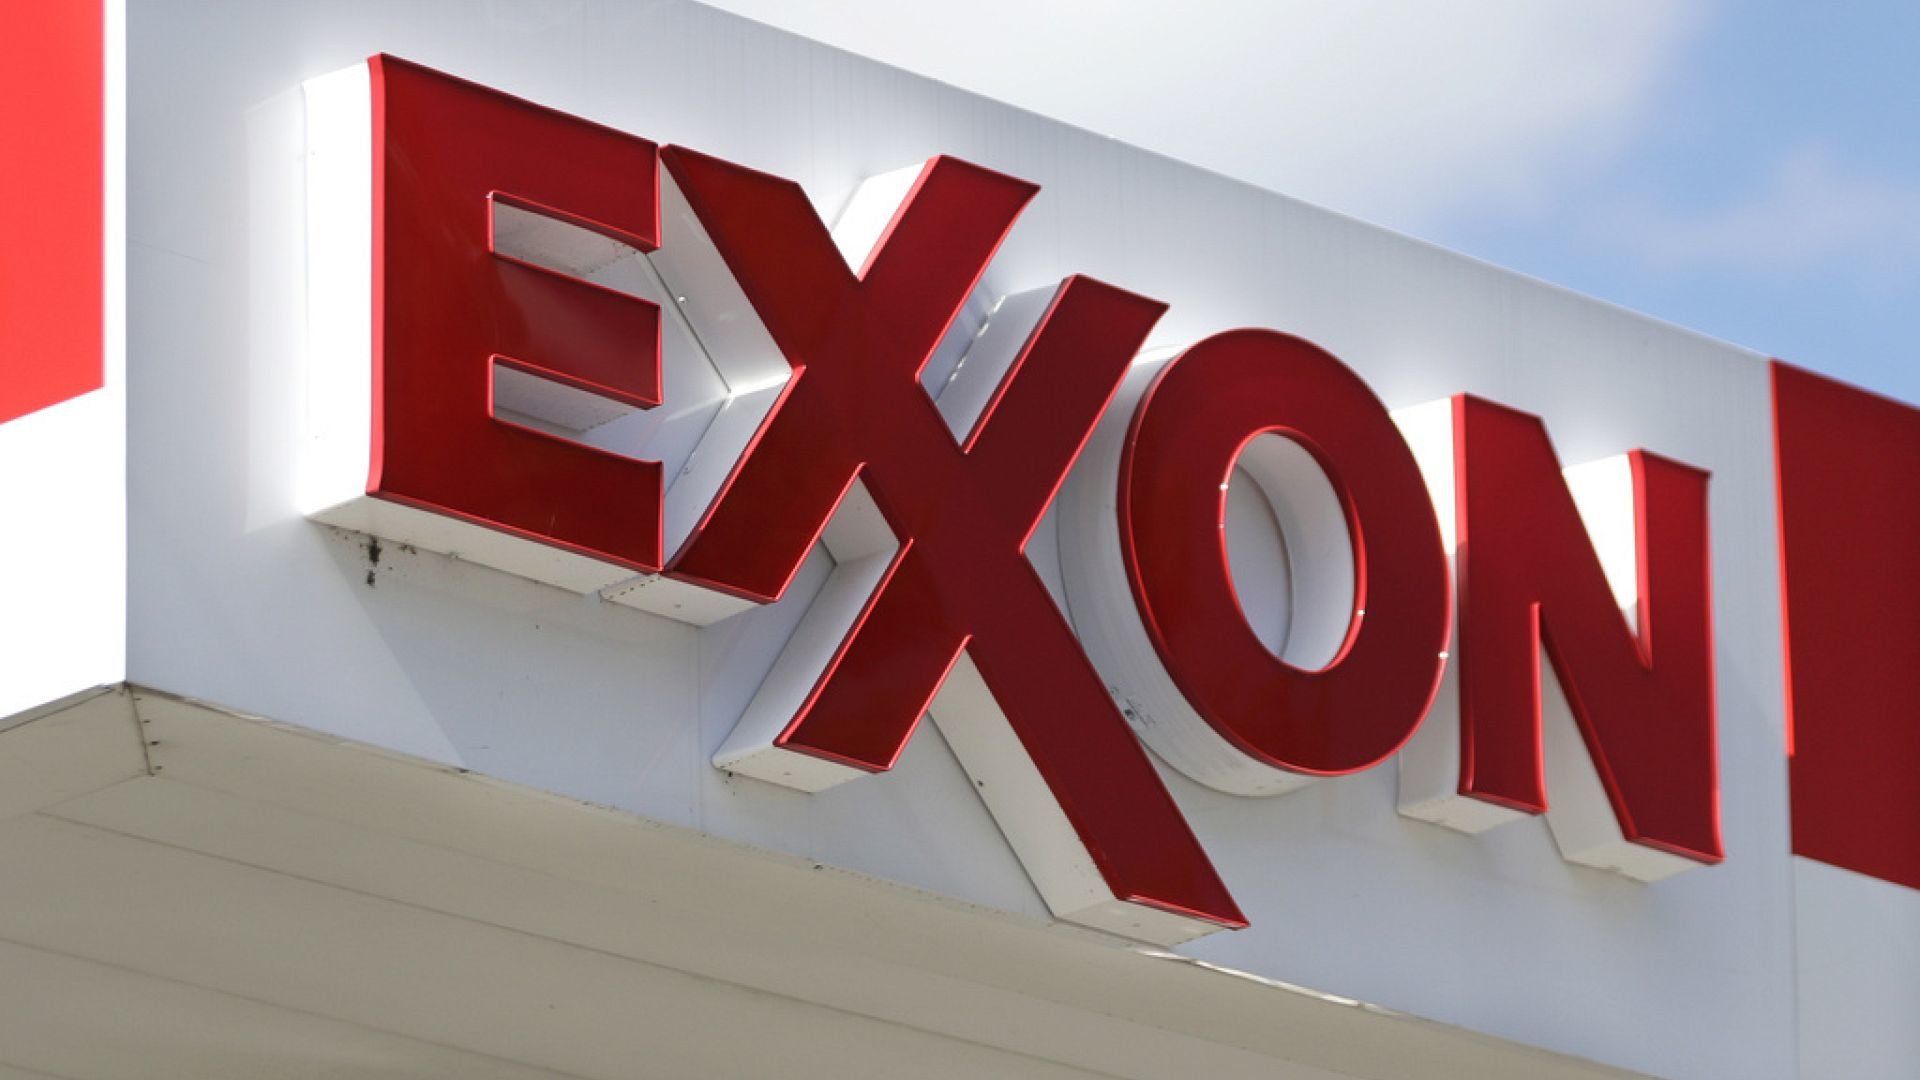 La Turquie cherche à diversifier son énergie avec ExxonMobil: accord de GNL de 1,1 milliard de dollars au milieu de l'amélioration entre les États-Unis et la Turquie et de la vulnérabilité russe